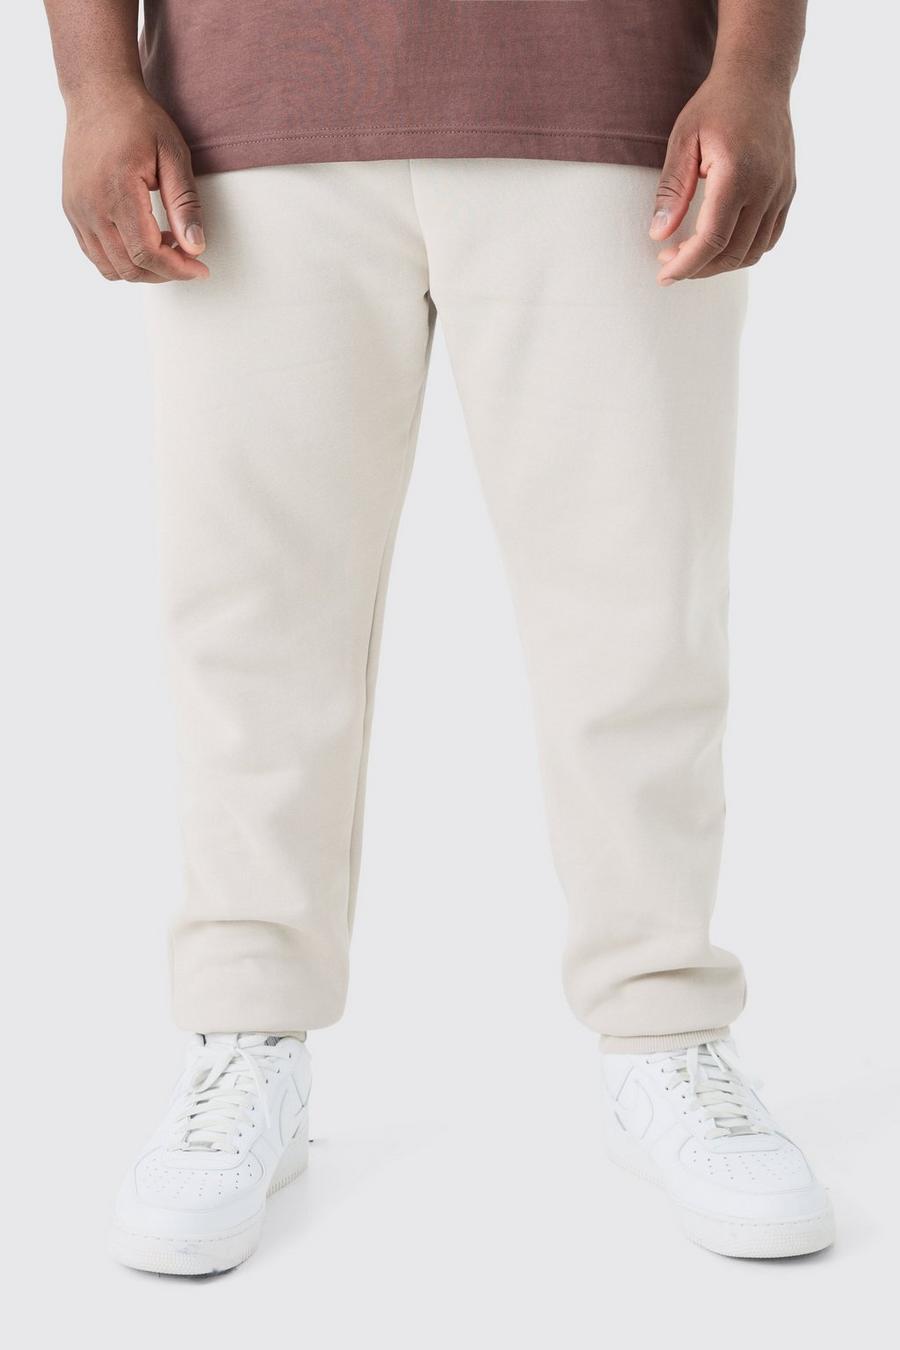 Pantaloni tuta Plus Size Basic Regular Fit, Stone